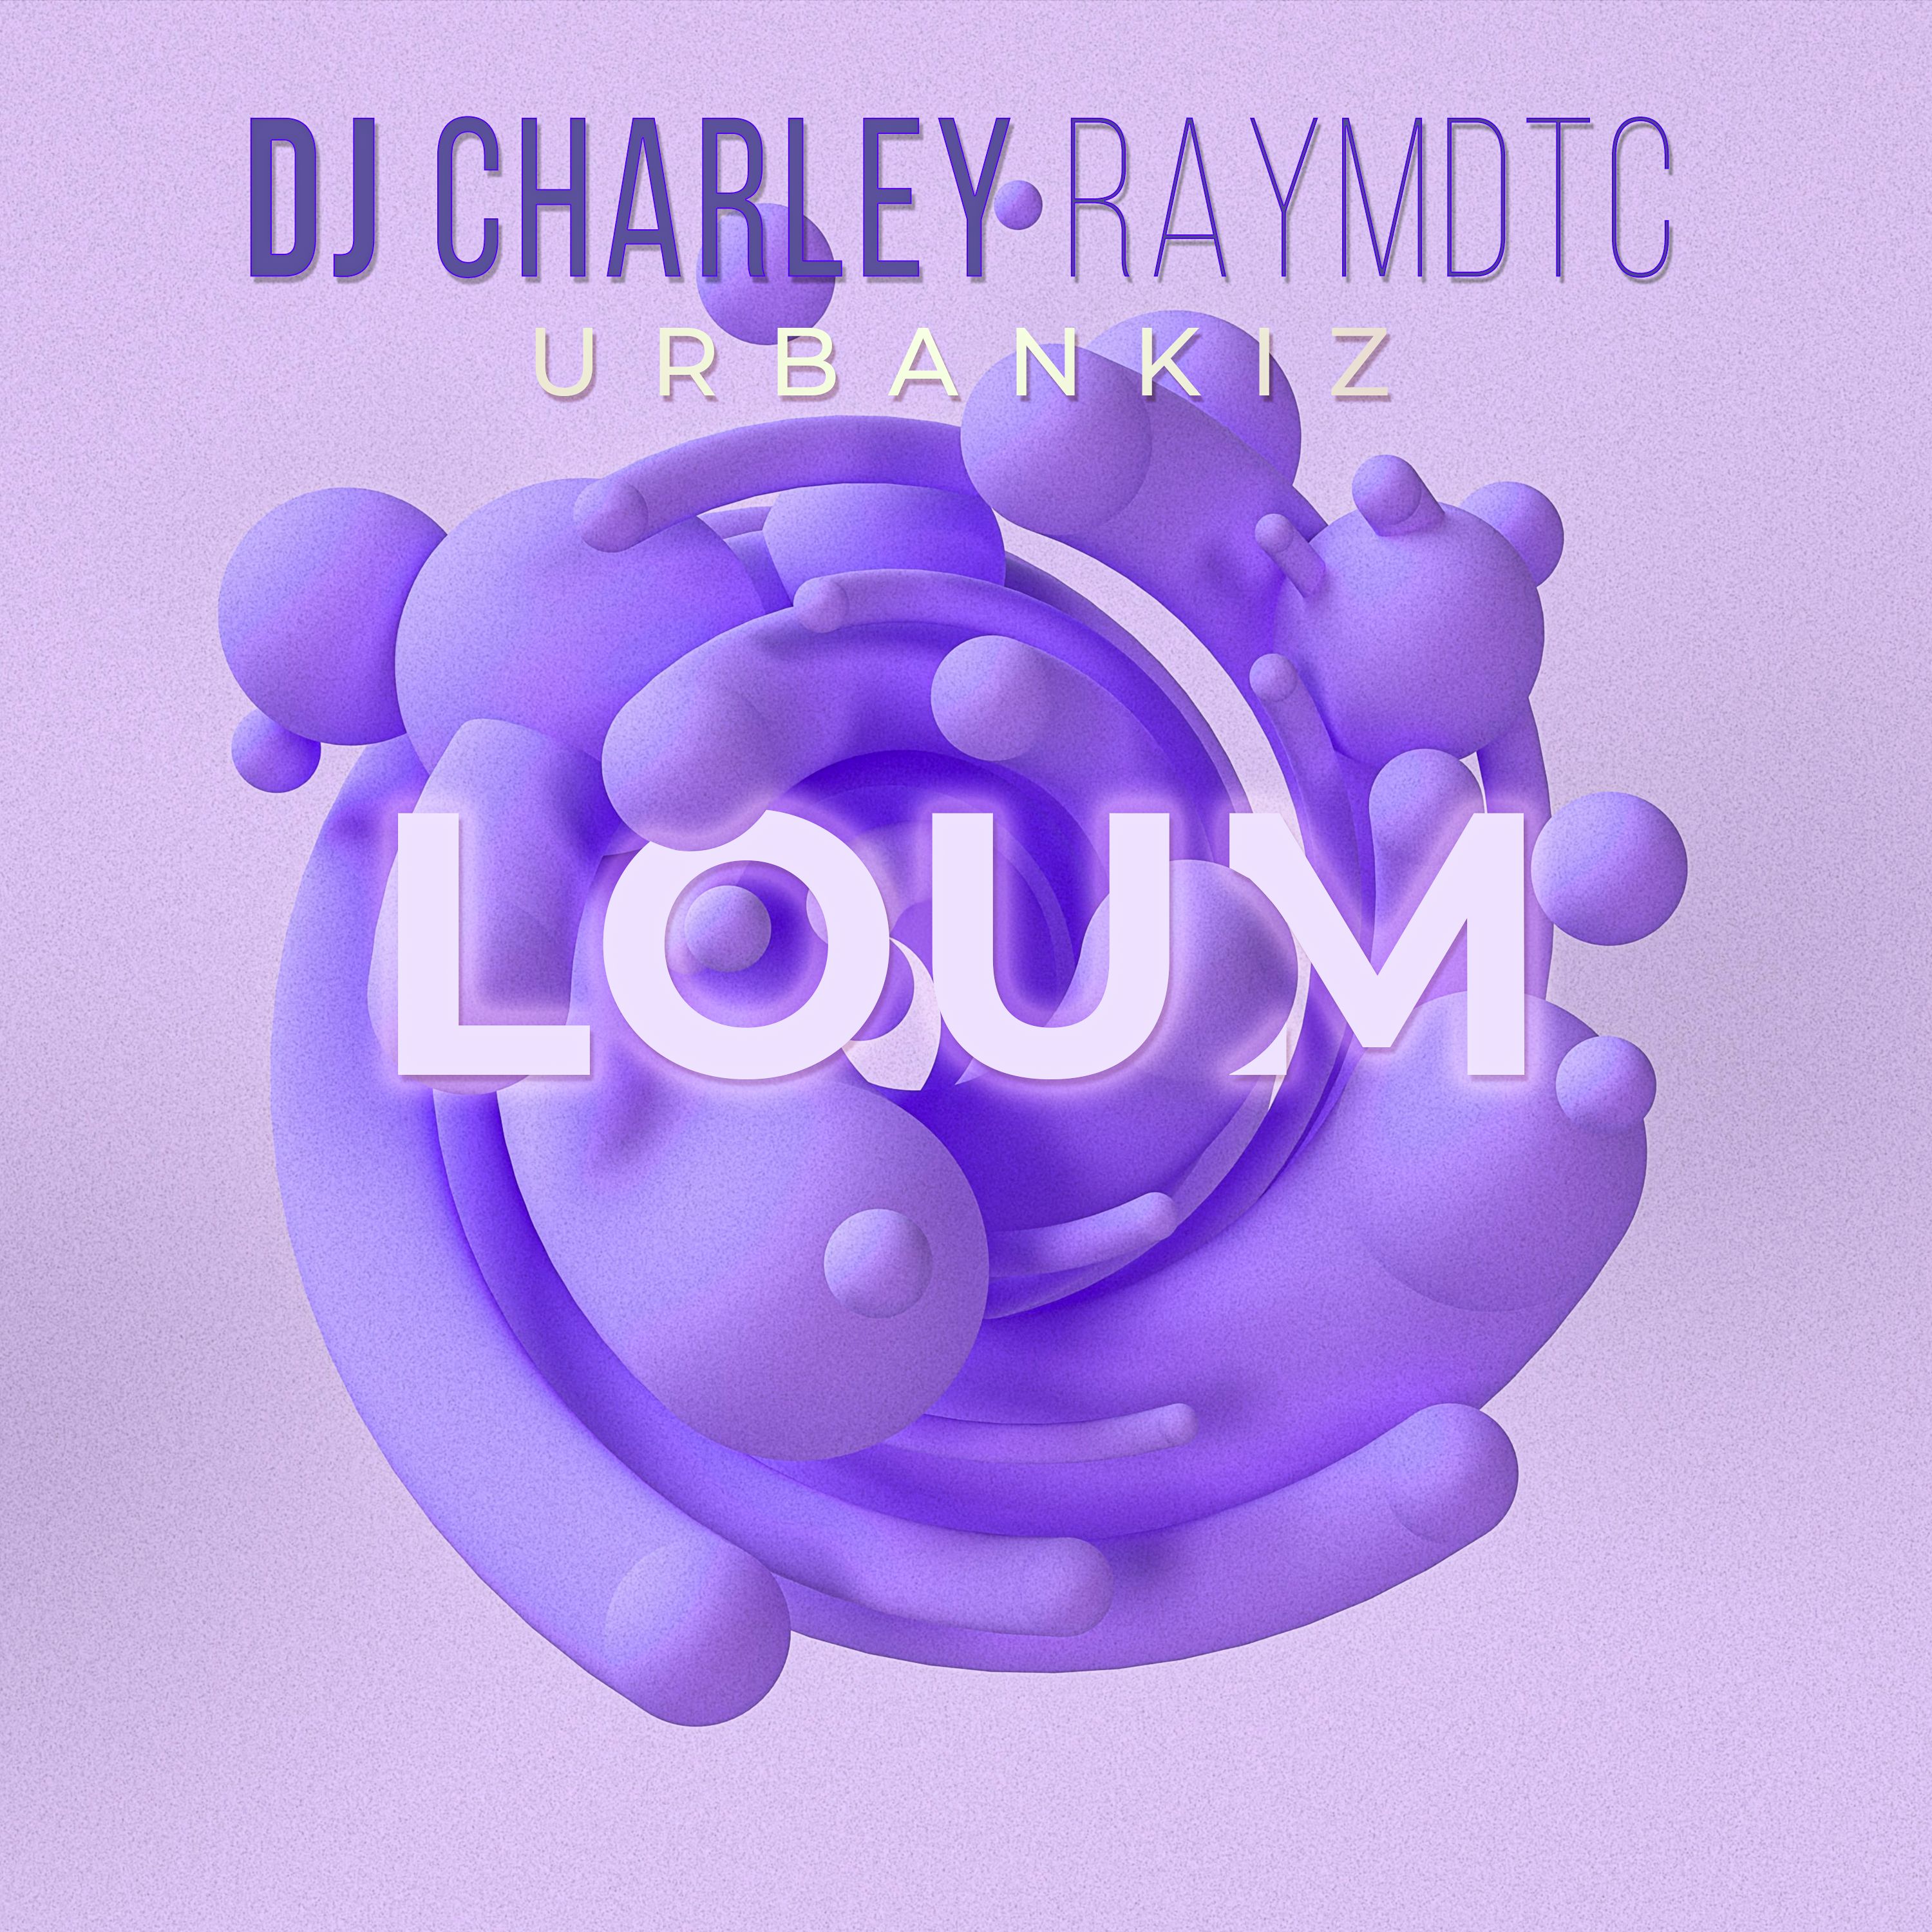 ဒေါင်းလုပ် DJ Charley Raymdtc - Loum (Ubankiz 2022 )